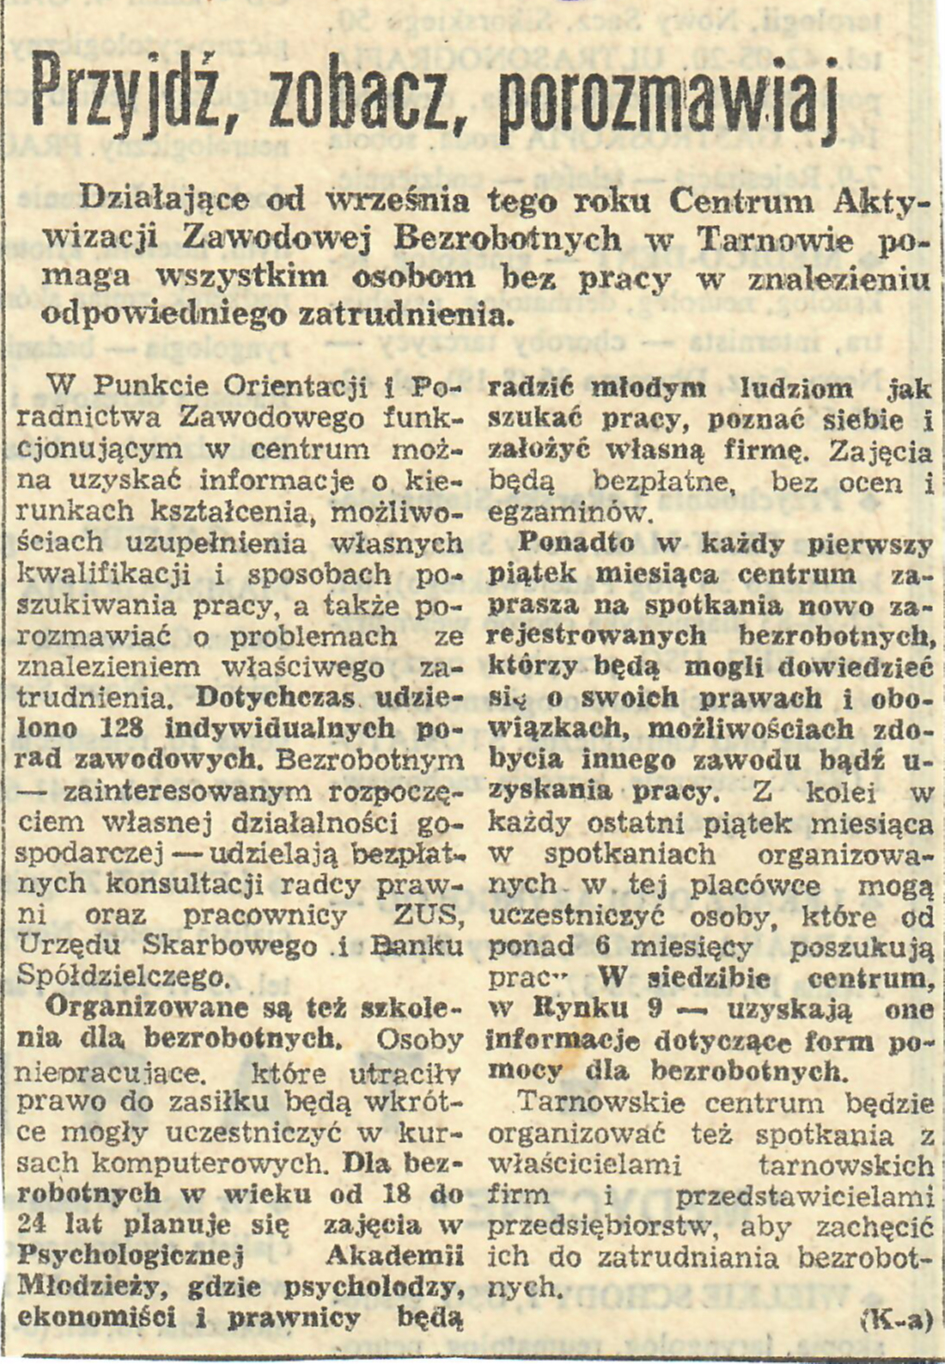 Artykuł z gazety dotyczący Tarnowskiego Centrum Aktywizacji Zawodowej Bezrobotnych